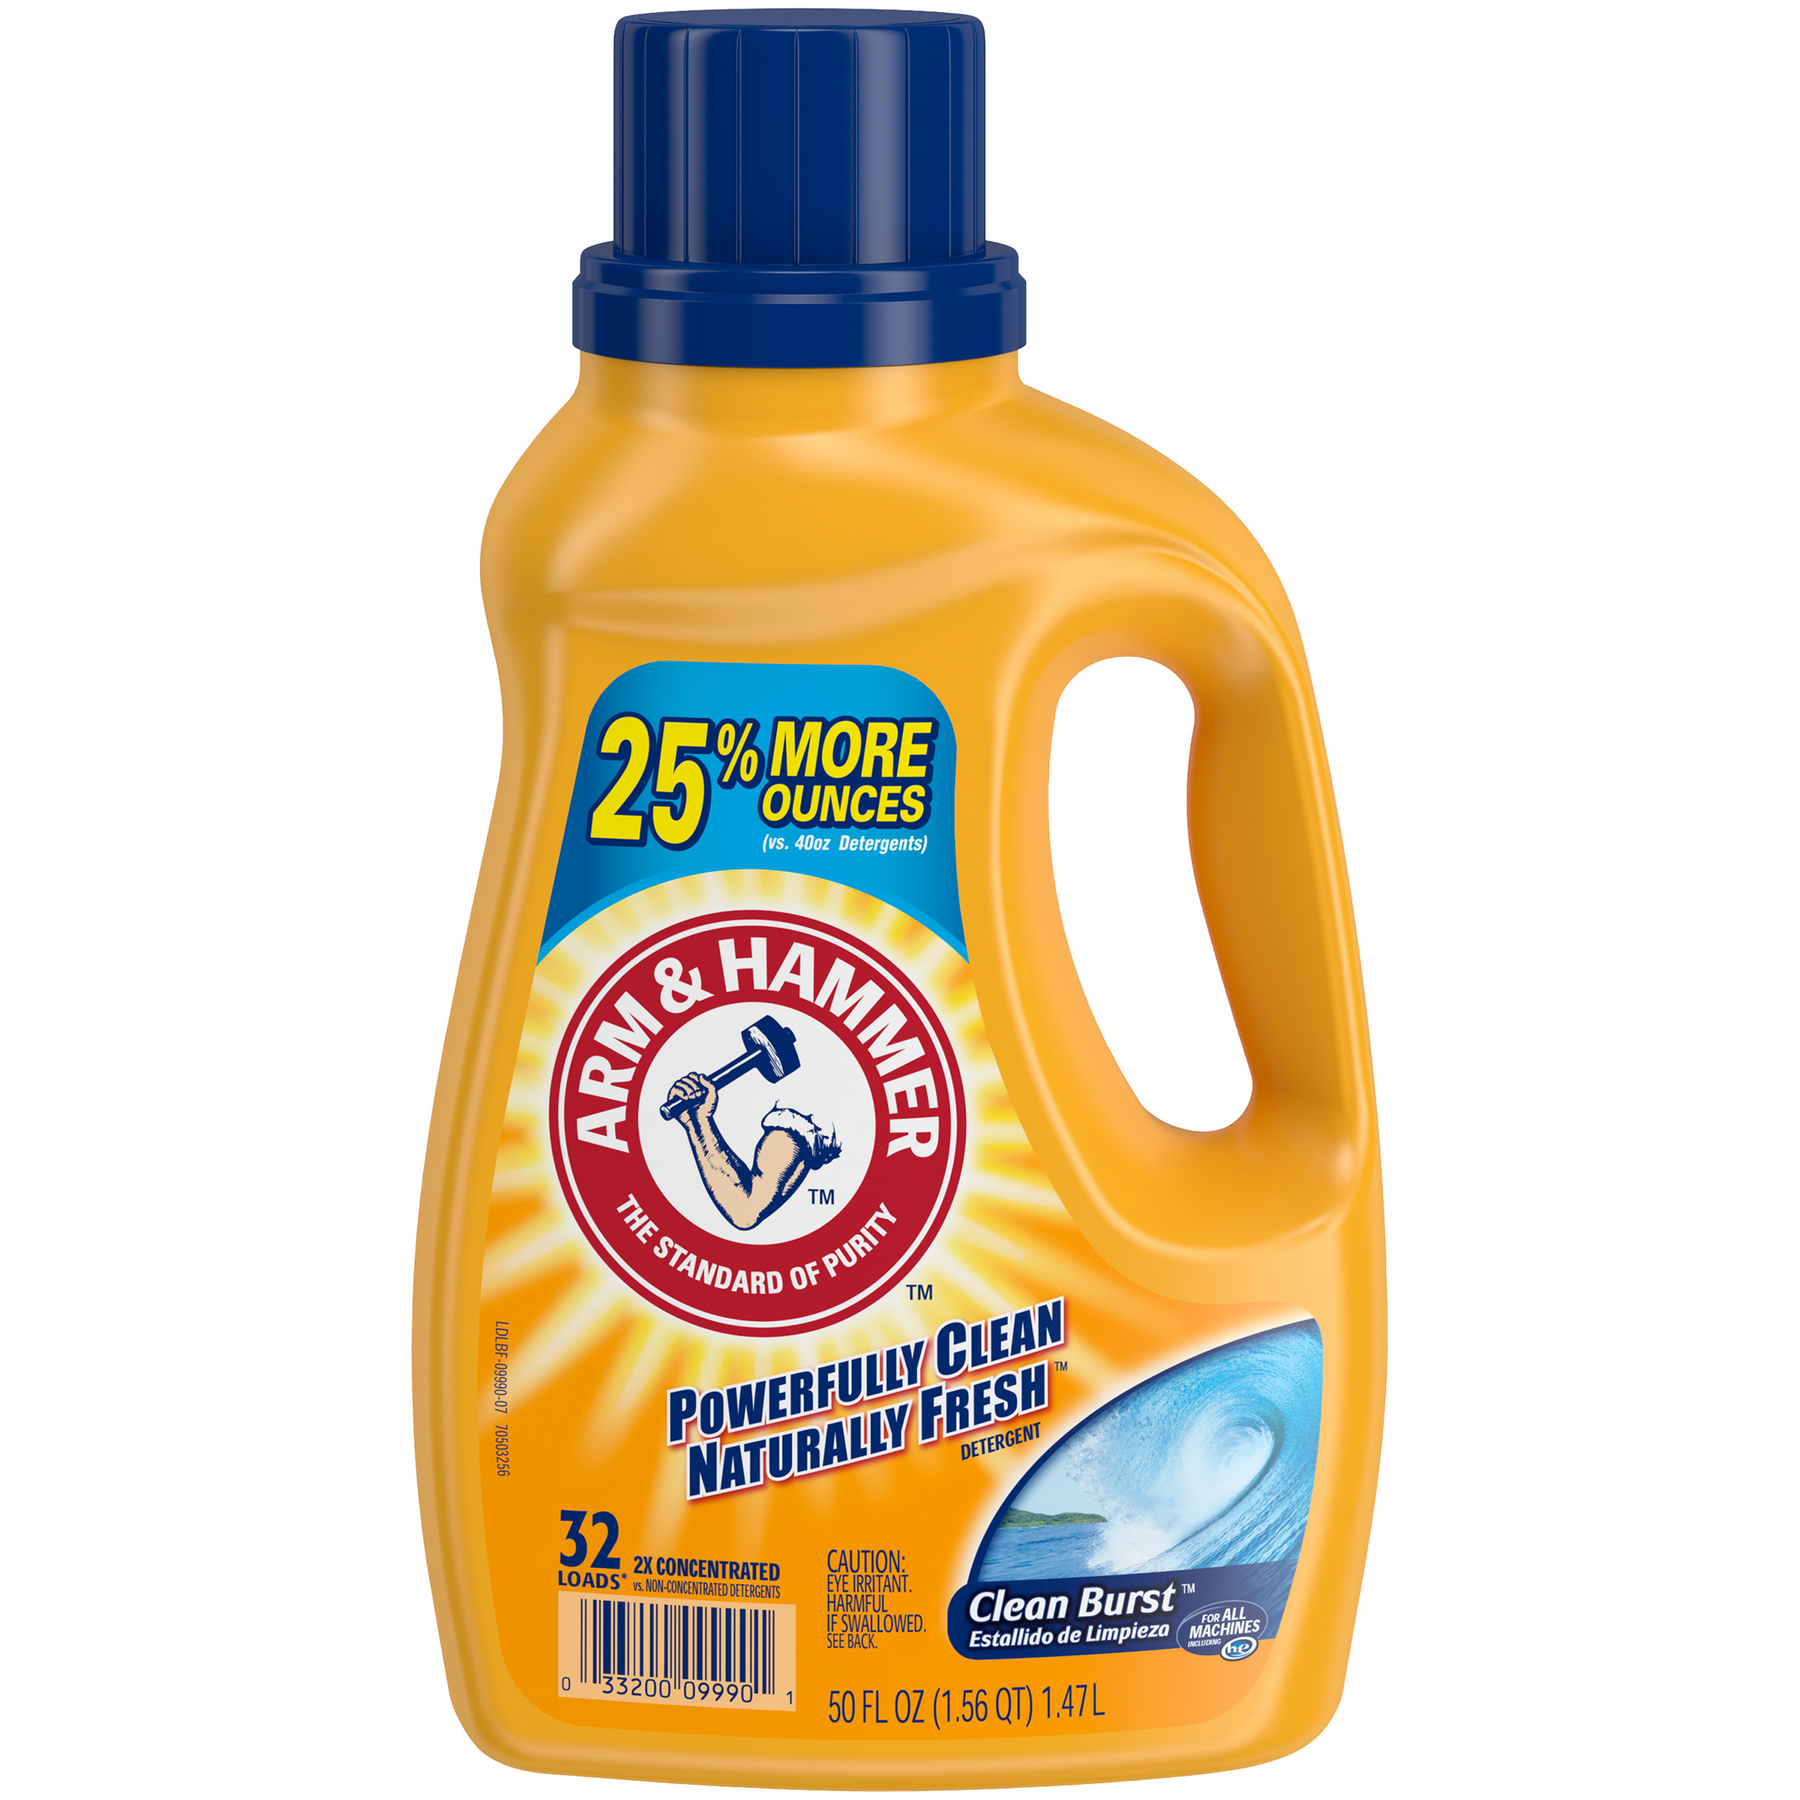 Detergente líquido Arm & Hammer con aroma Clean Burst 1,48 Lt. Rinde 32 Lavados